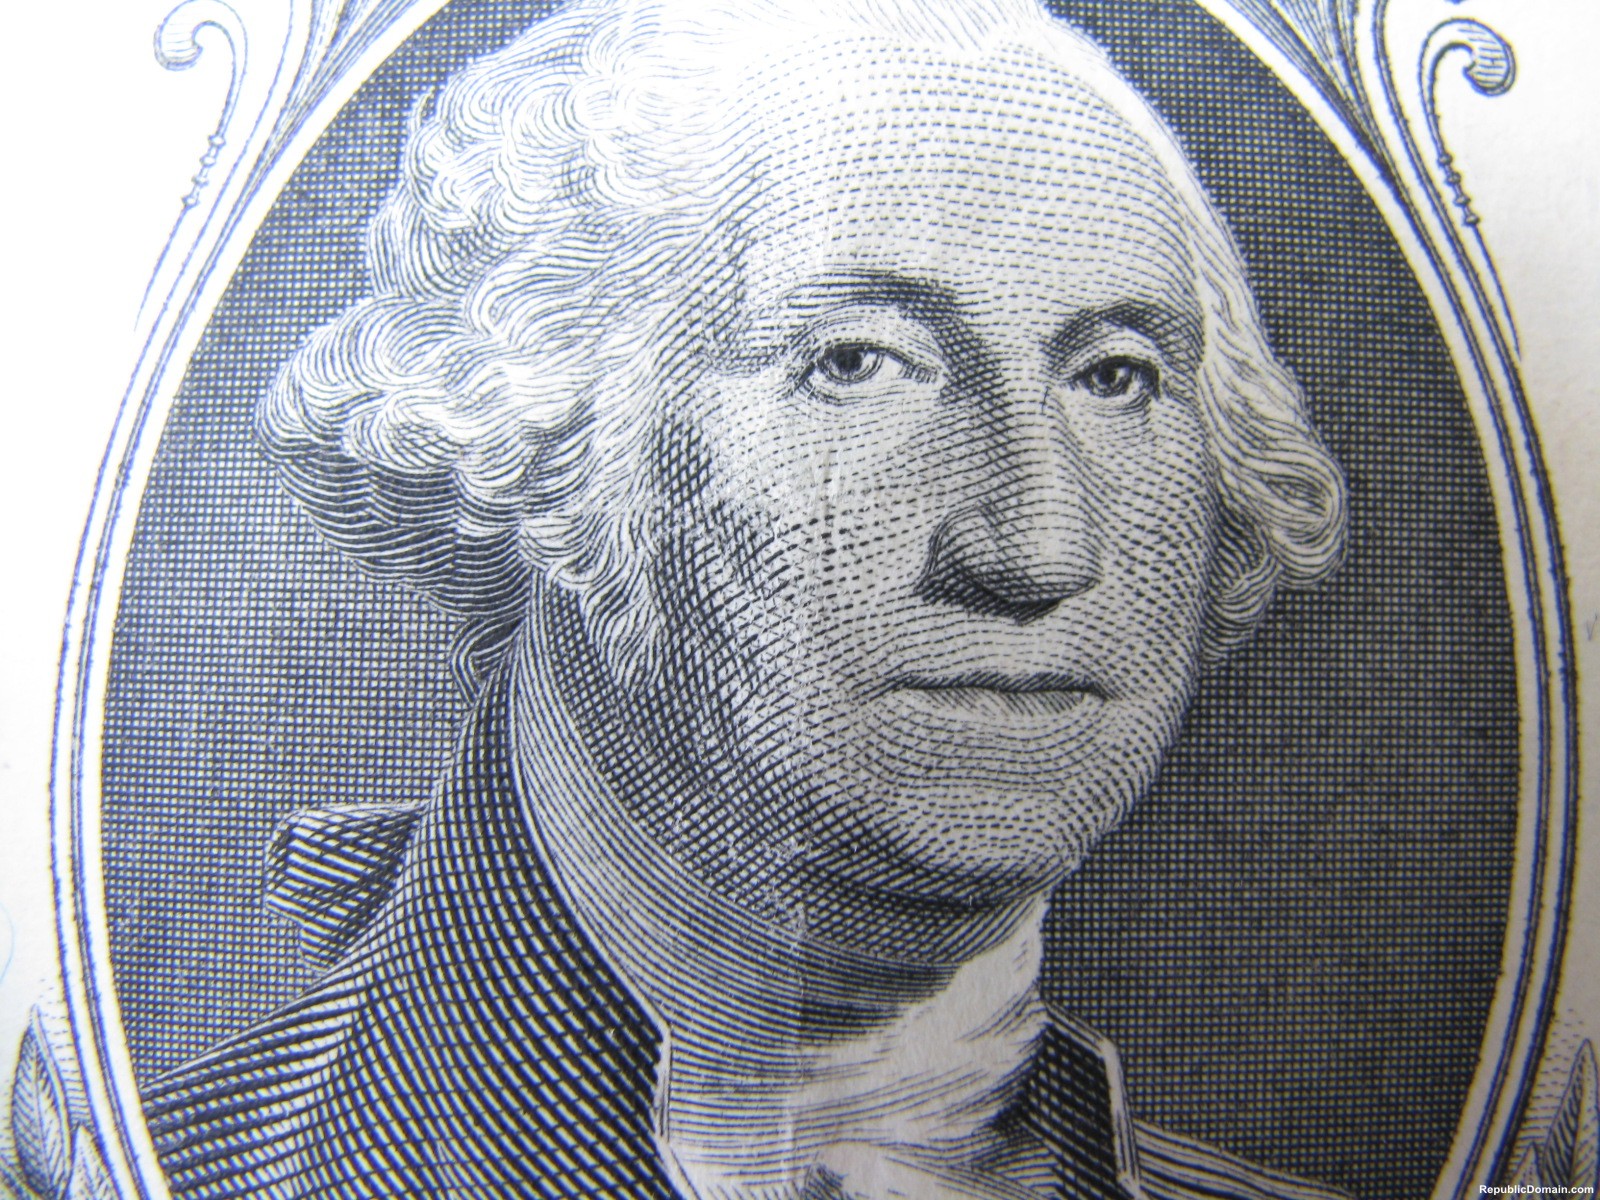 ジョージワシントン壁紙,お金,頭,現金,紙幣,額